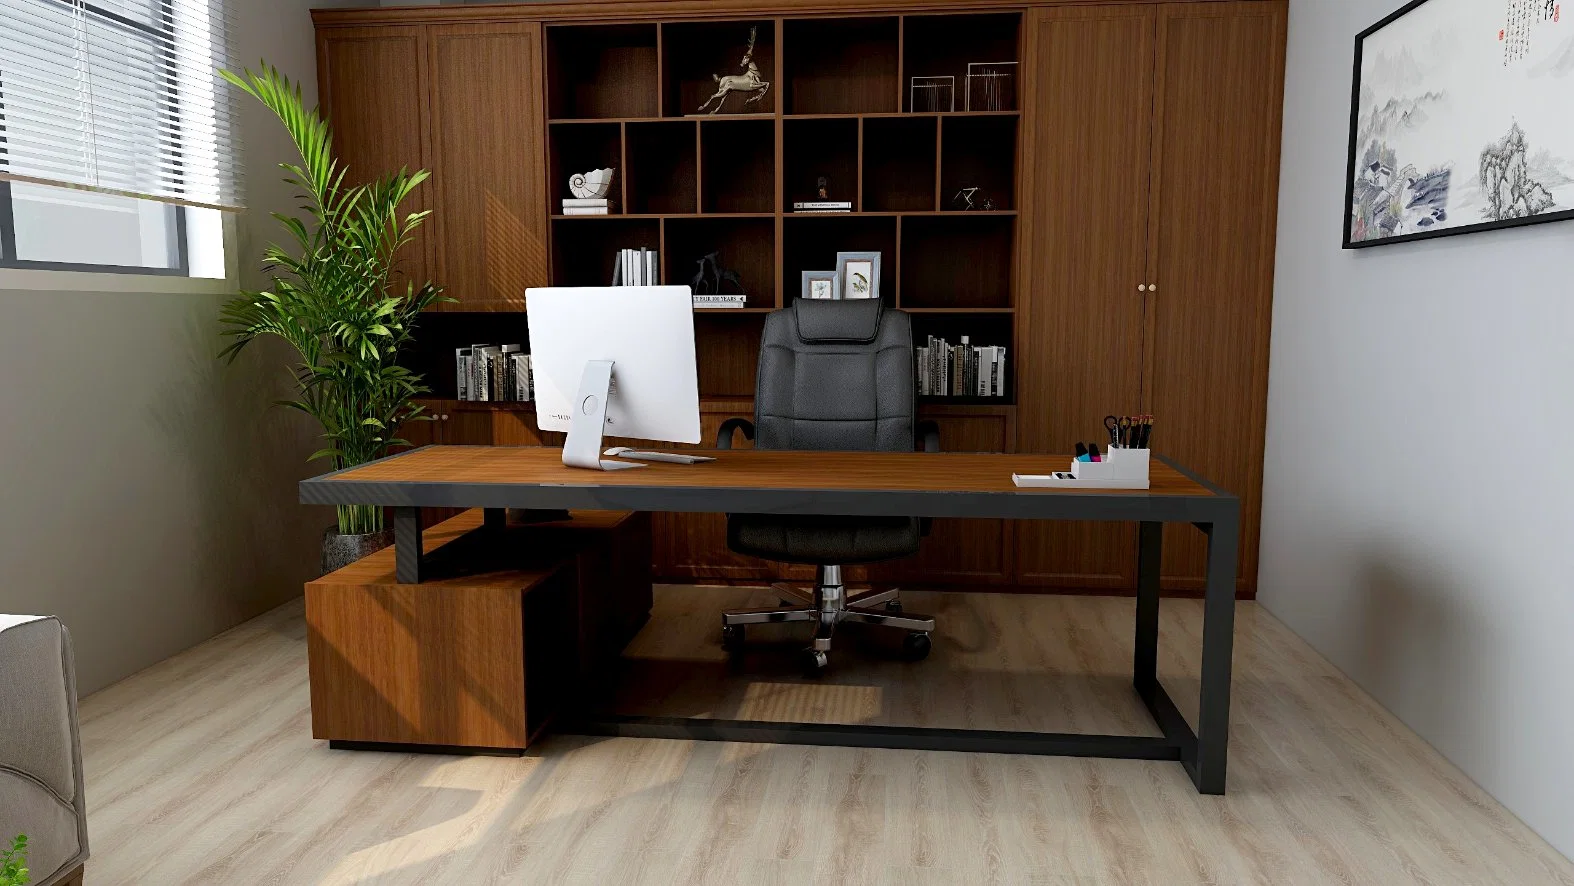 Móveis de madeira armários de metal escritório móveis secretária para estudo Quarto